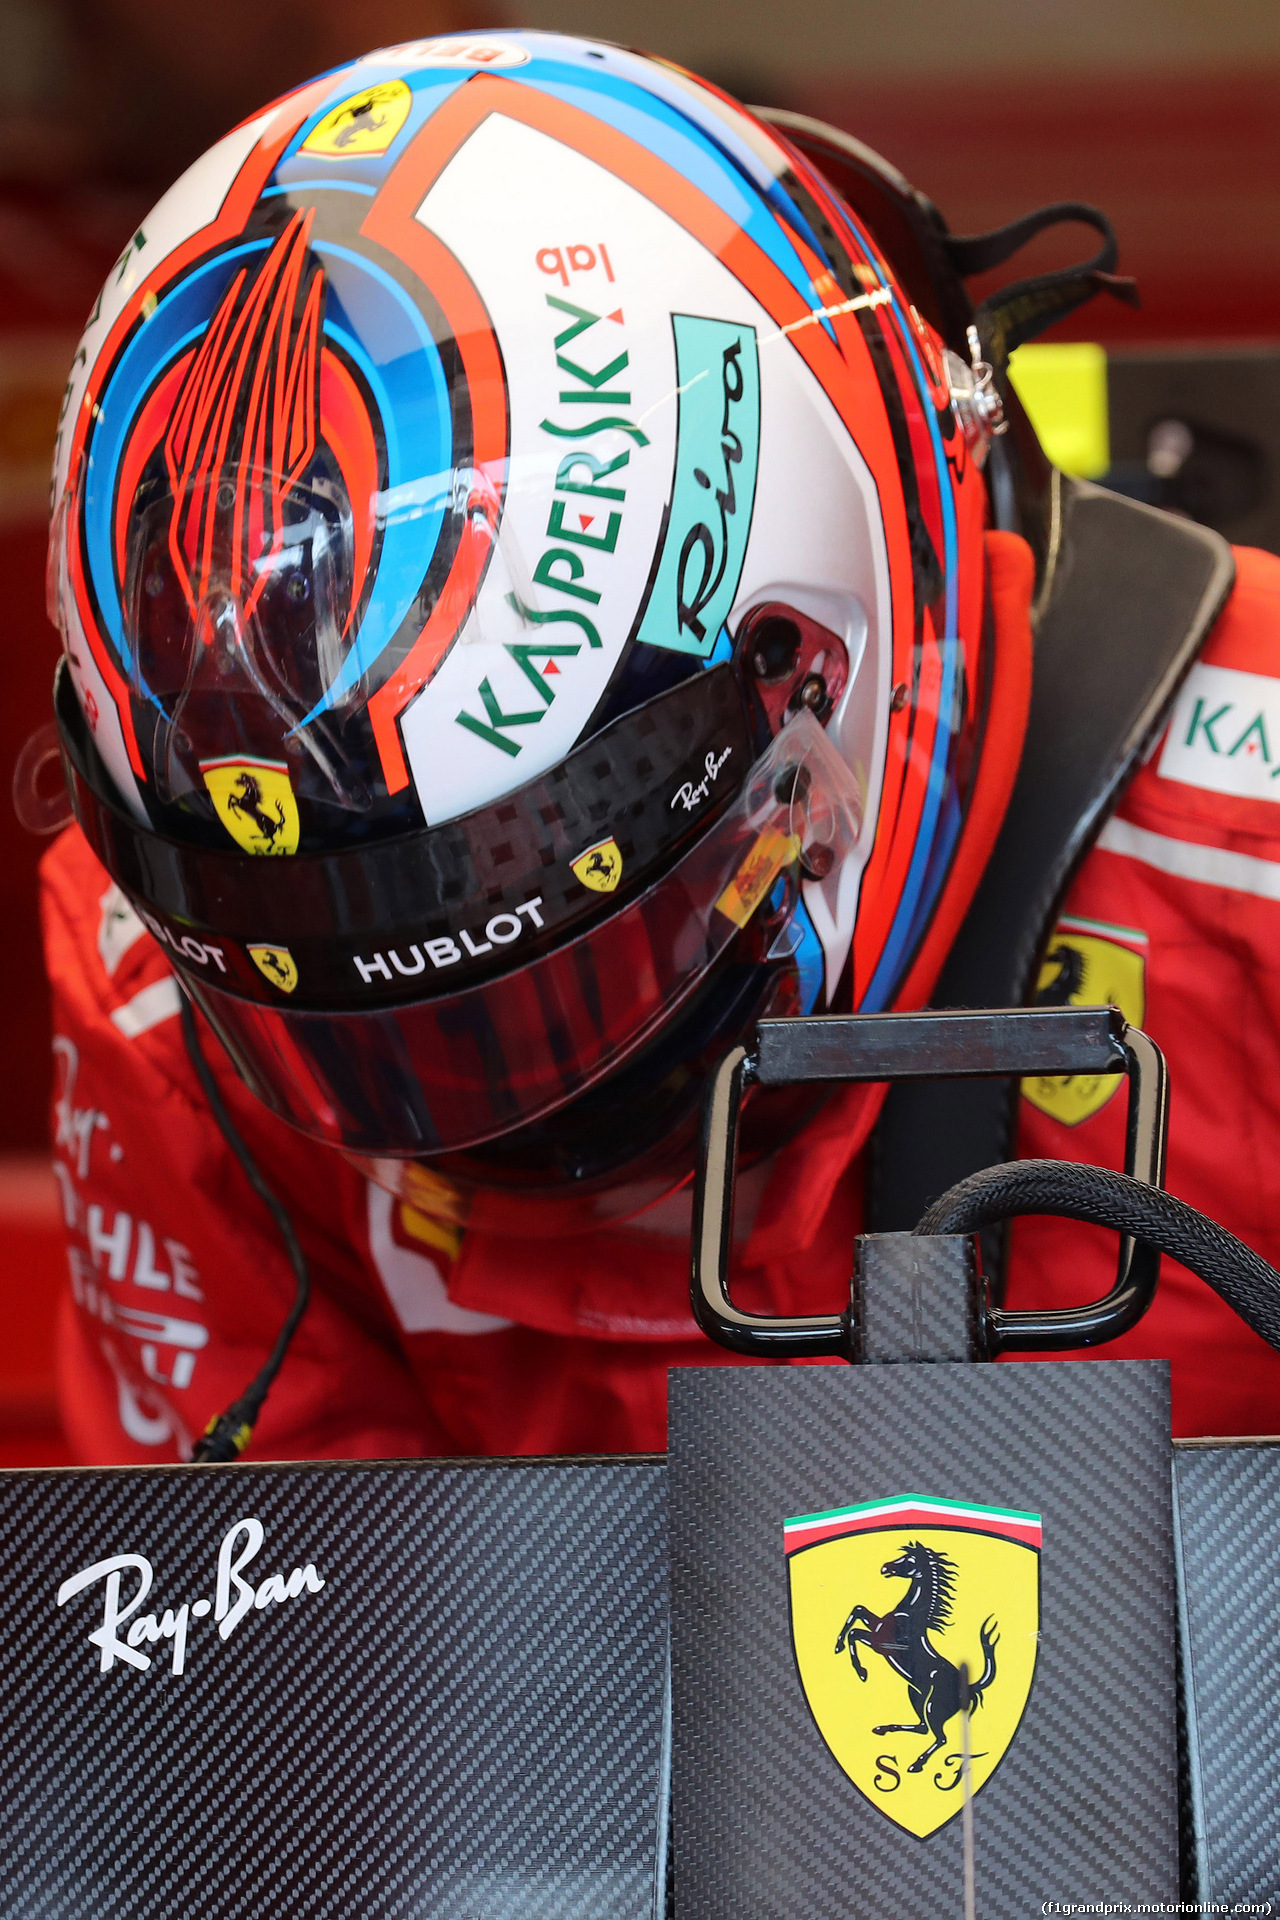 GP UNGHERIA, 29.07.2018 - Gara, Kimi Raikkonen (FIN) Ferrari SF71H